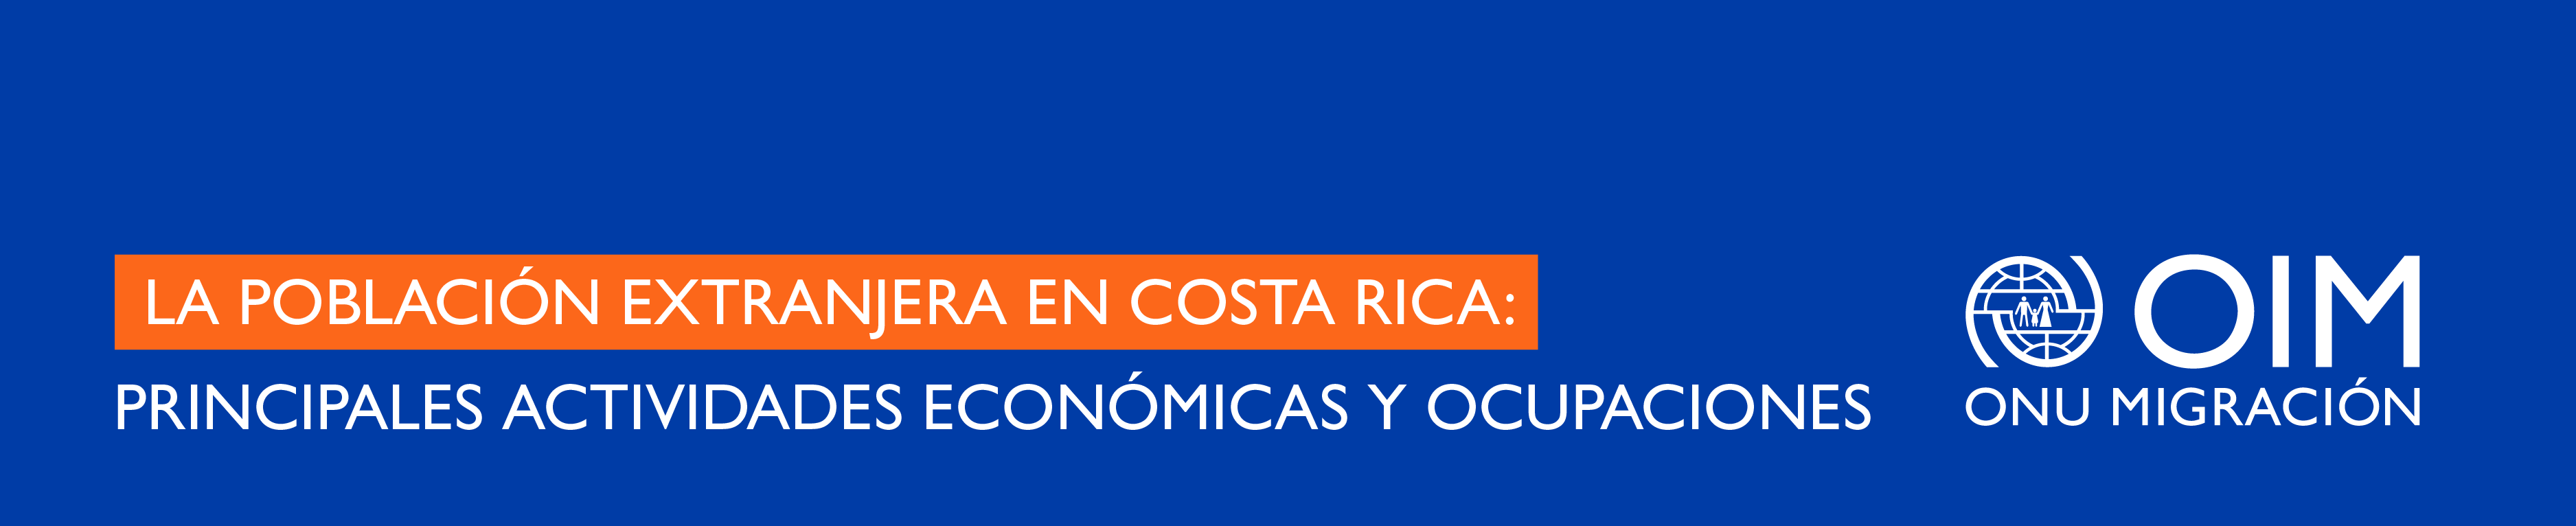 La población extranjera en Costa Rica: Principales actividades económicas y ocupaciones